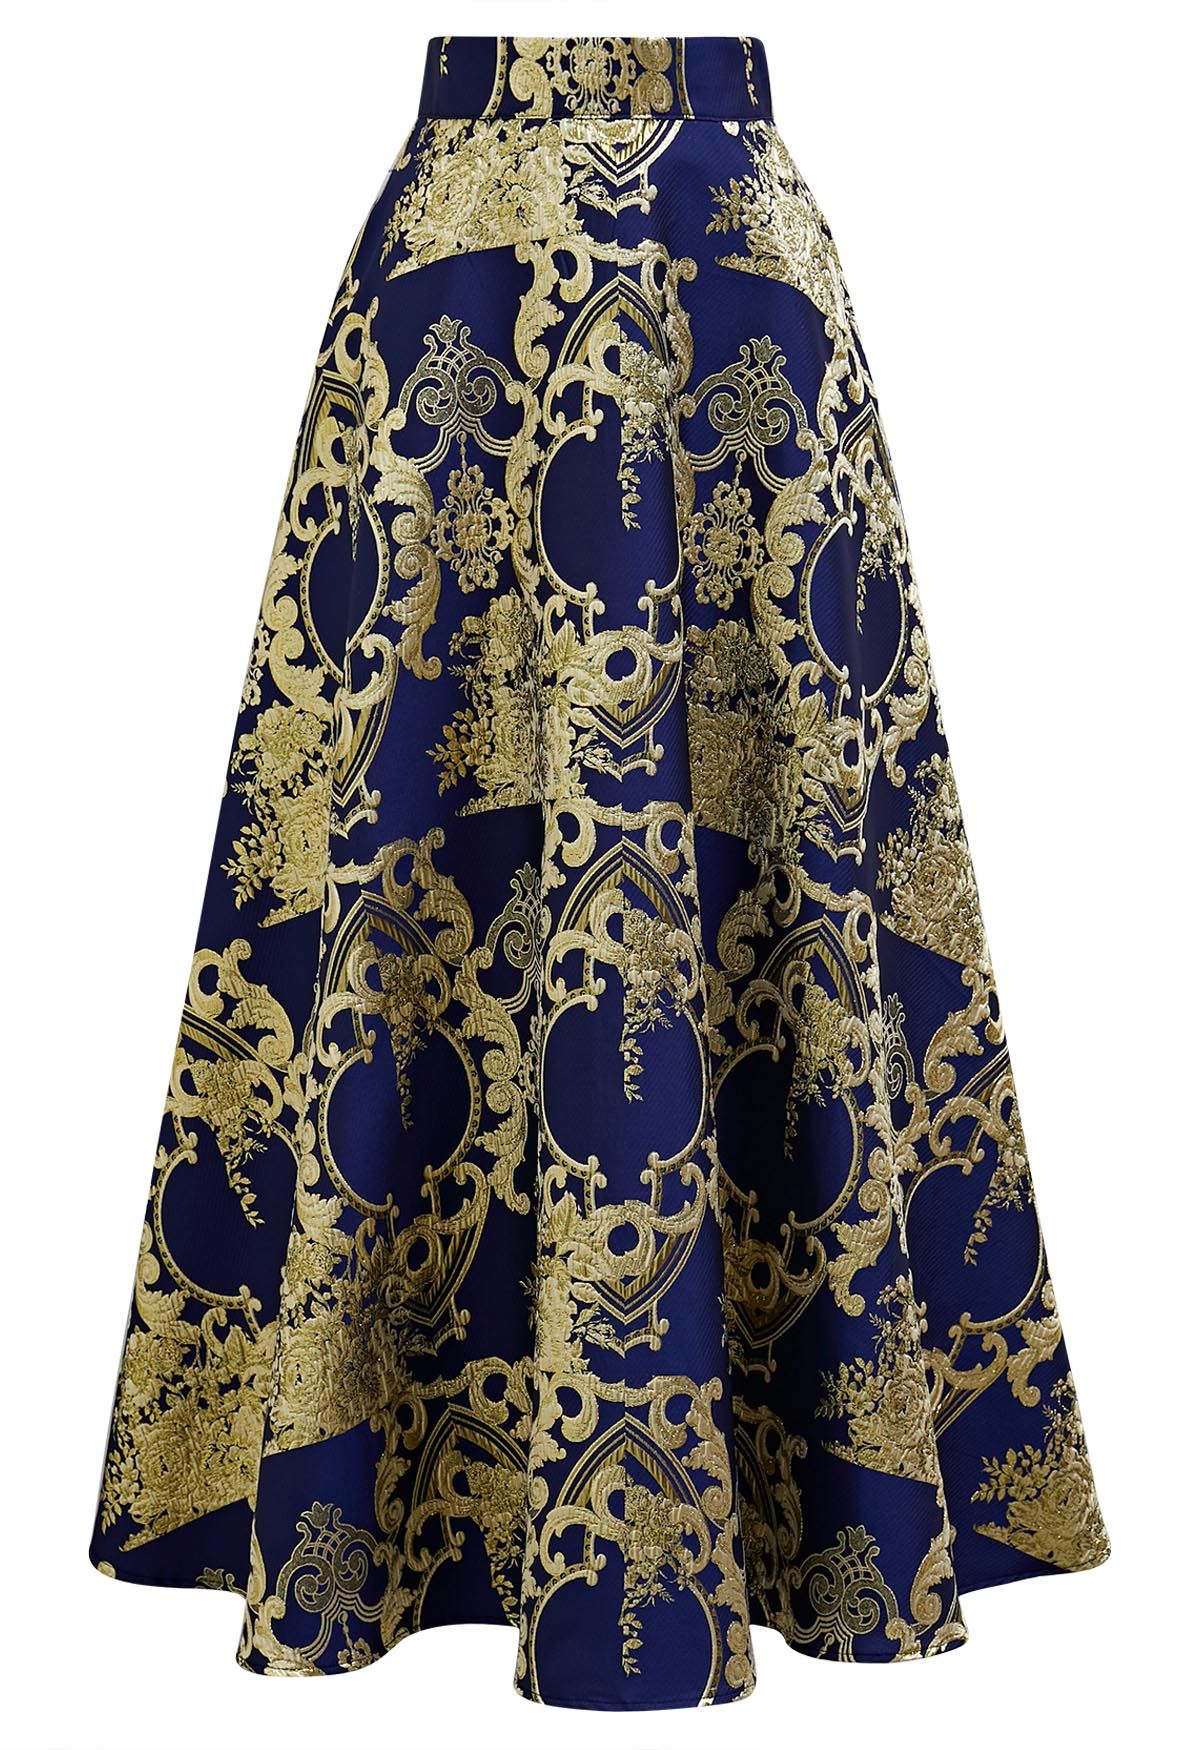 Falda larga de jacquard barroco con hilo metálico en azul marino de Glamorous